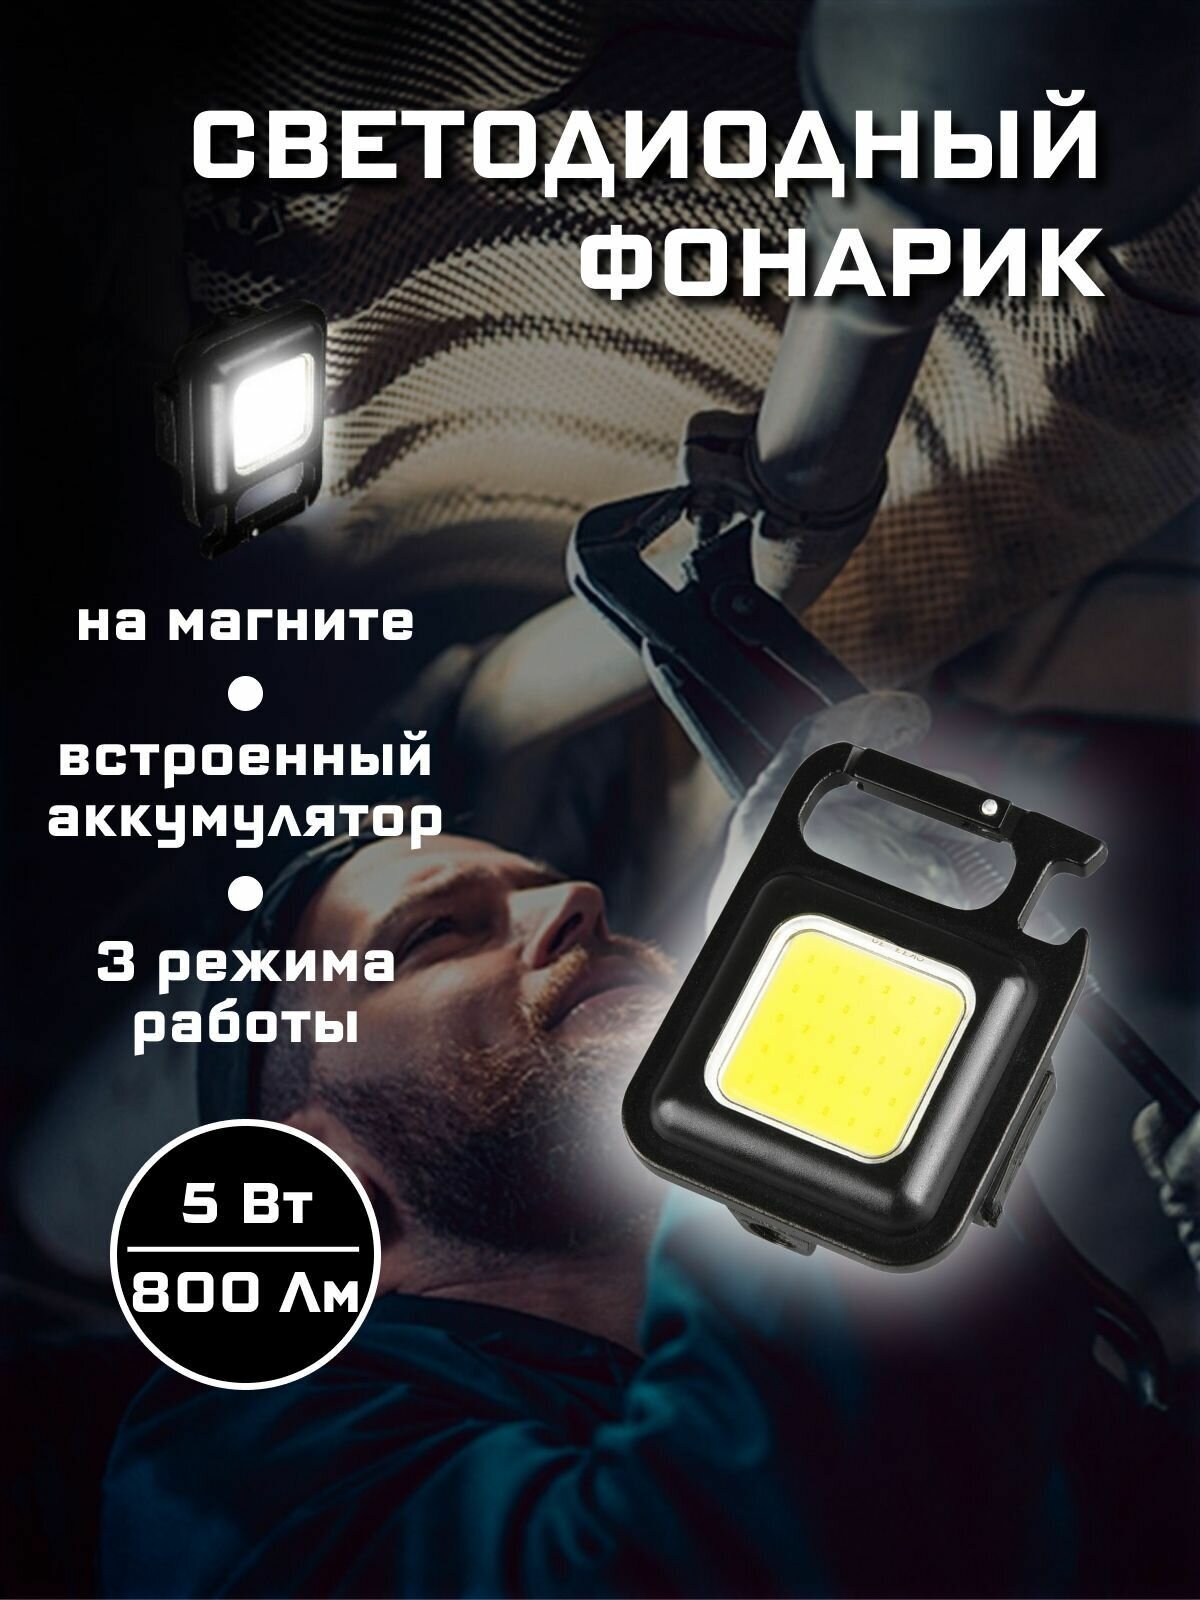 Светодиодный туристический фонарик 5 Вт 800 Лм.